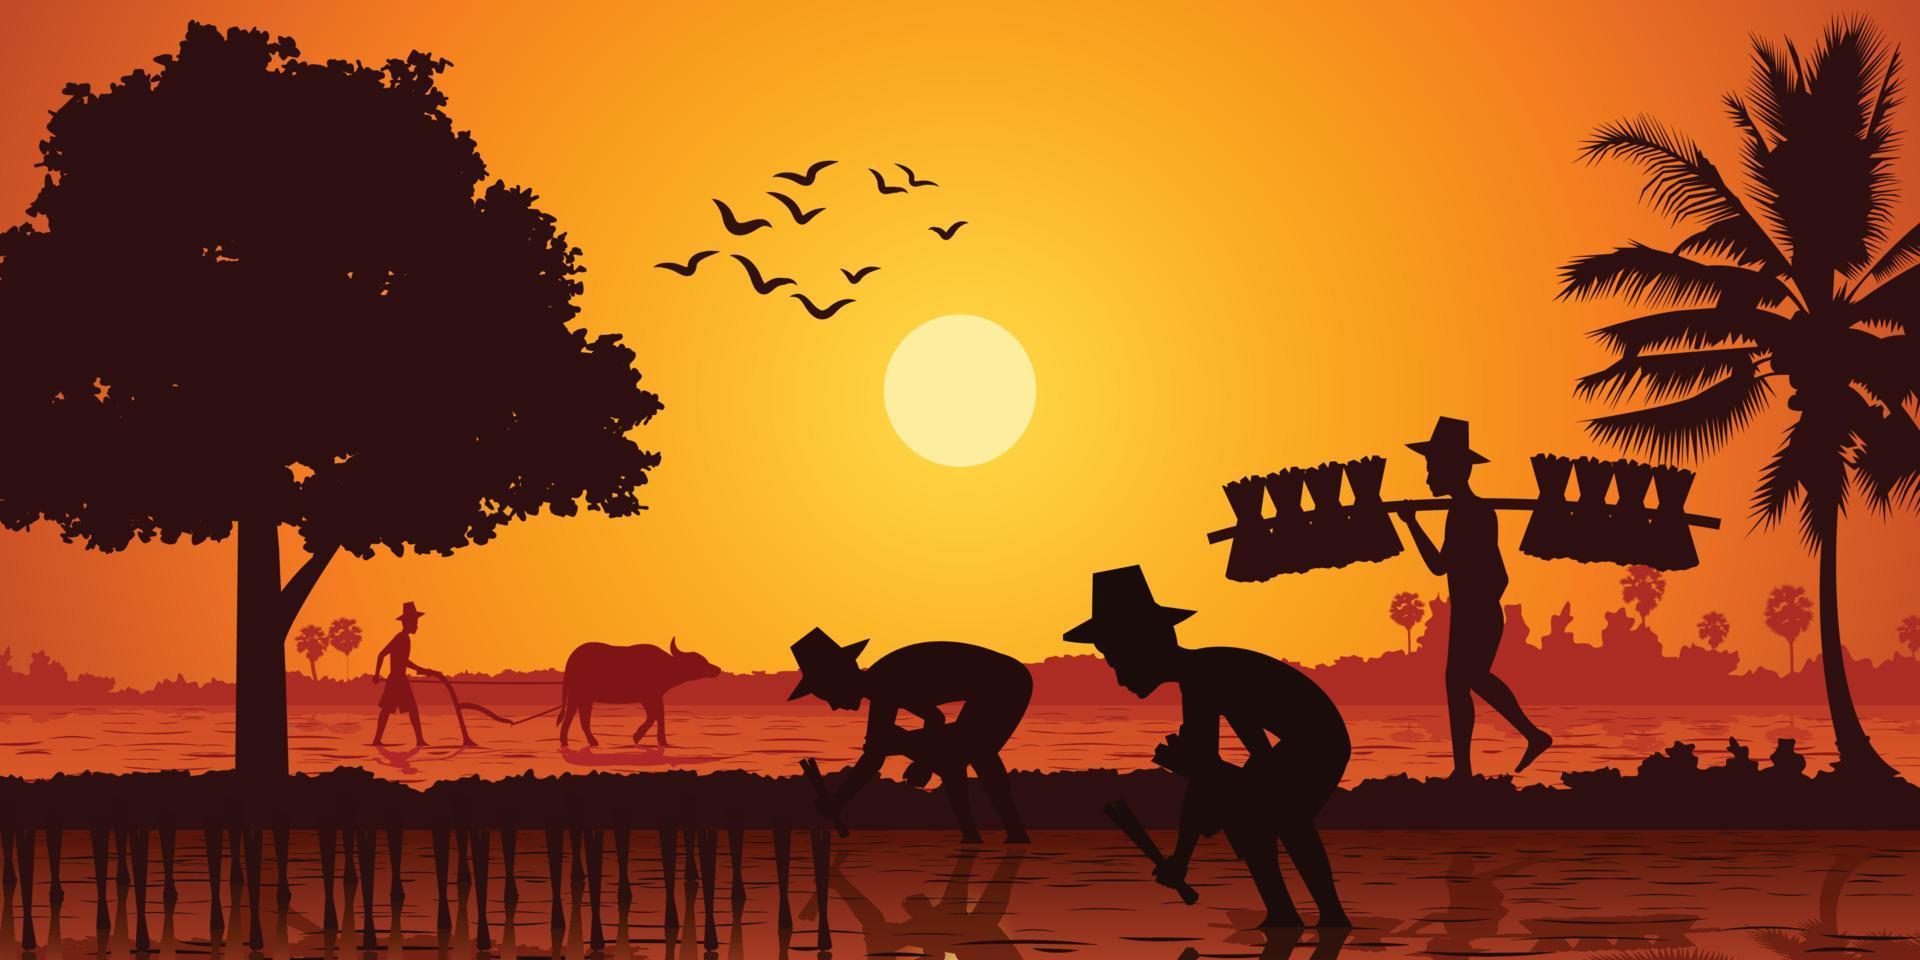 la vida en el campo de asia agricultor planta arroz mientras un hombre lleva plántulas de arroz y otro campo de arado por búfalos a la hora del amanecer, estilo silueta vector